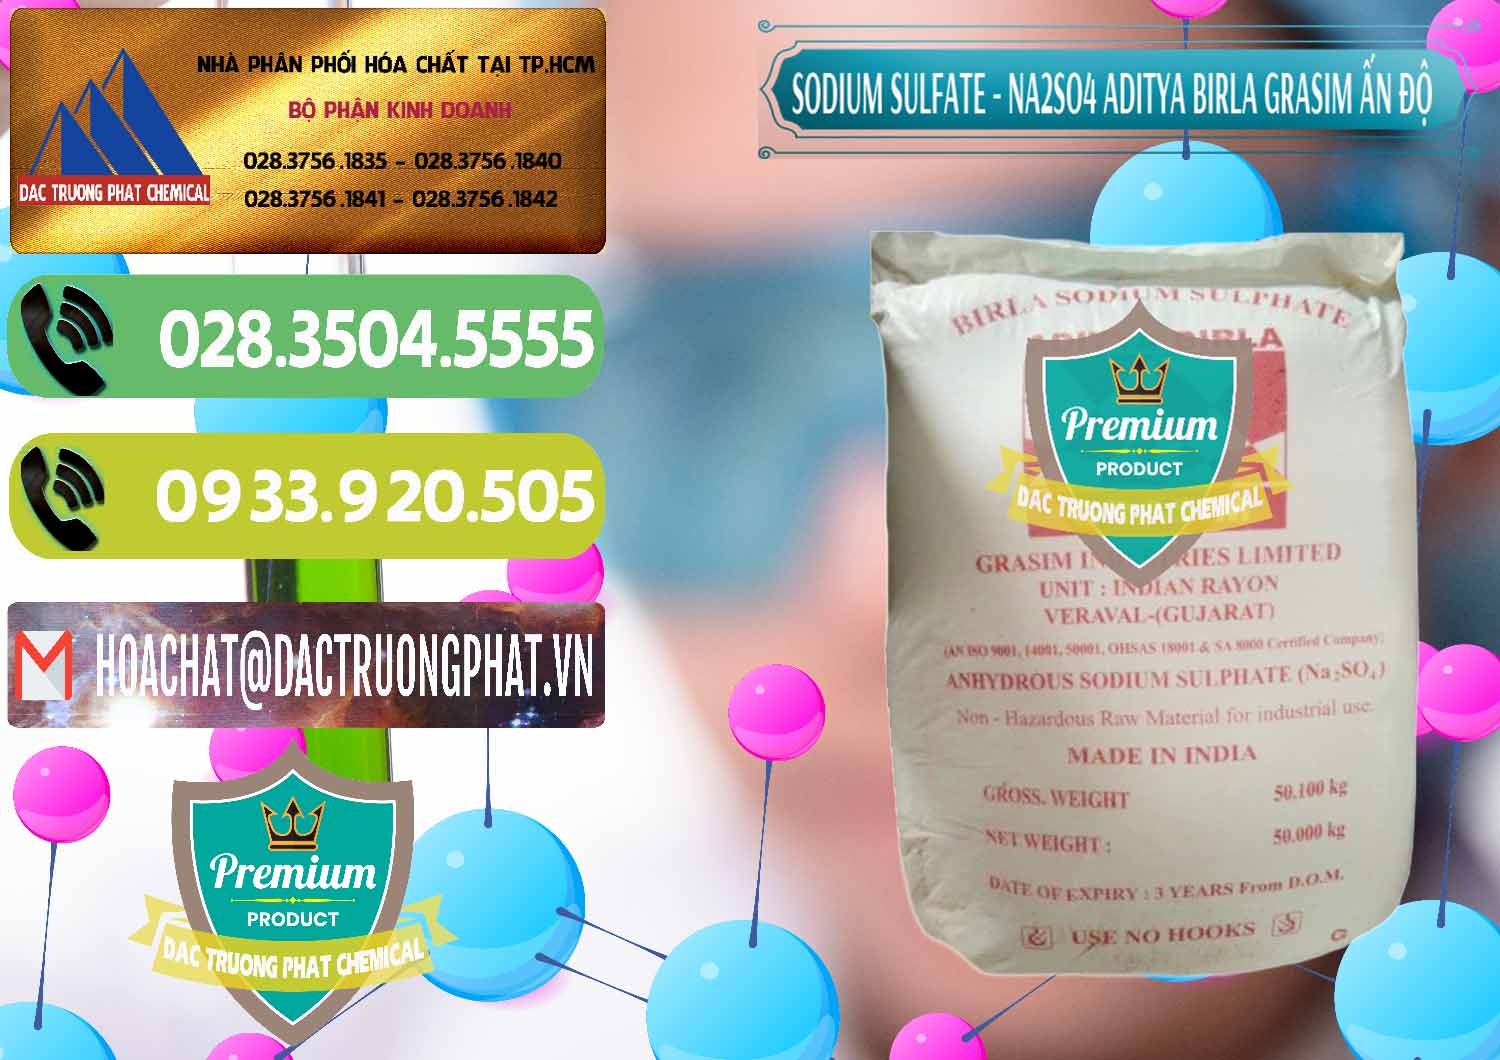 Chuyên nhập khẩu và bán Sodium Sulphate - Muối Sunfat Na2SO4 Grasim Ấn Độ India - 0356 - Công ty phân phối & nhập khẩu hóa chất tại TP.HCM - hoachatmientay.vn